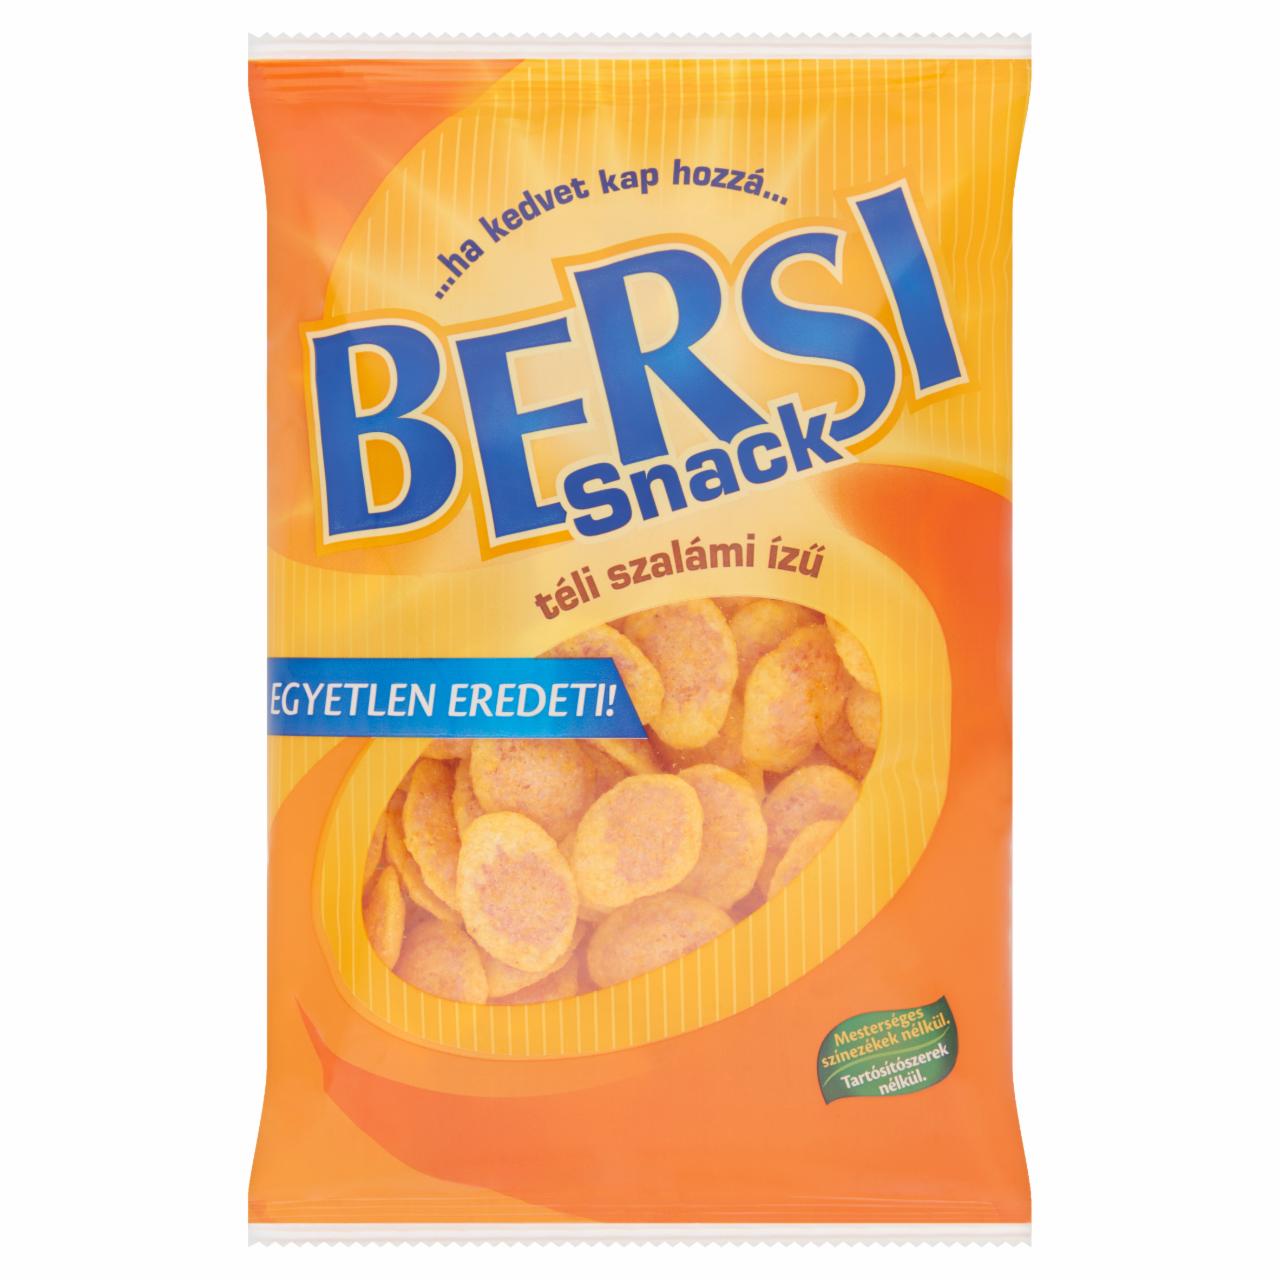 Képek - Bersi Snack téli szalámi ízű snack 60 g